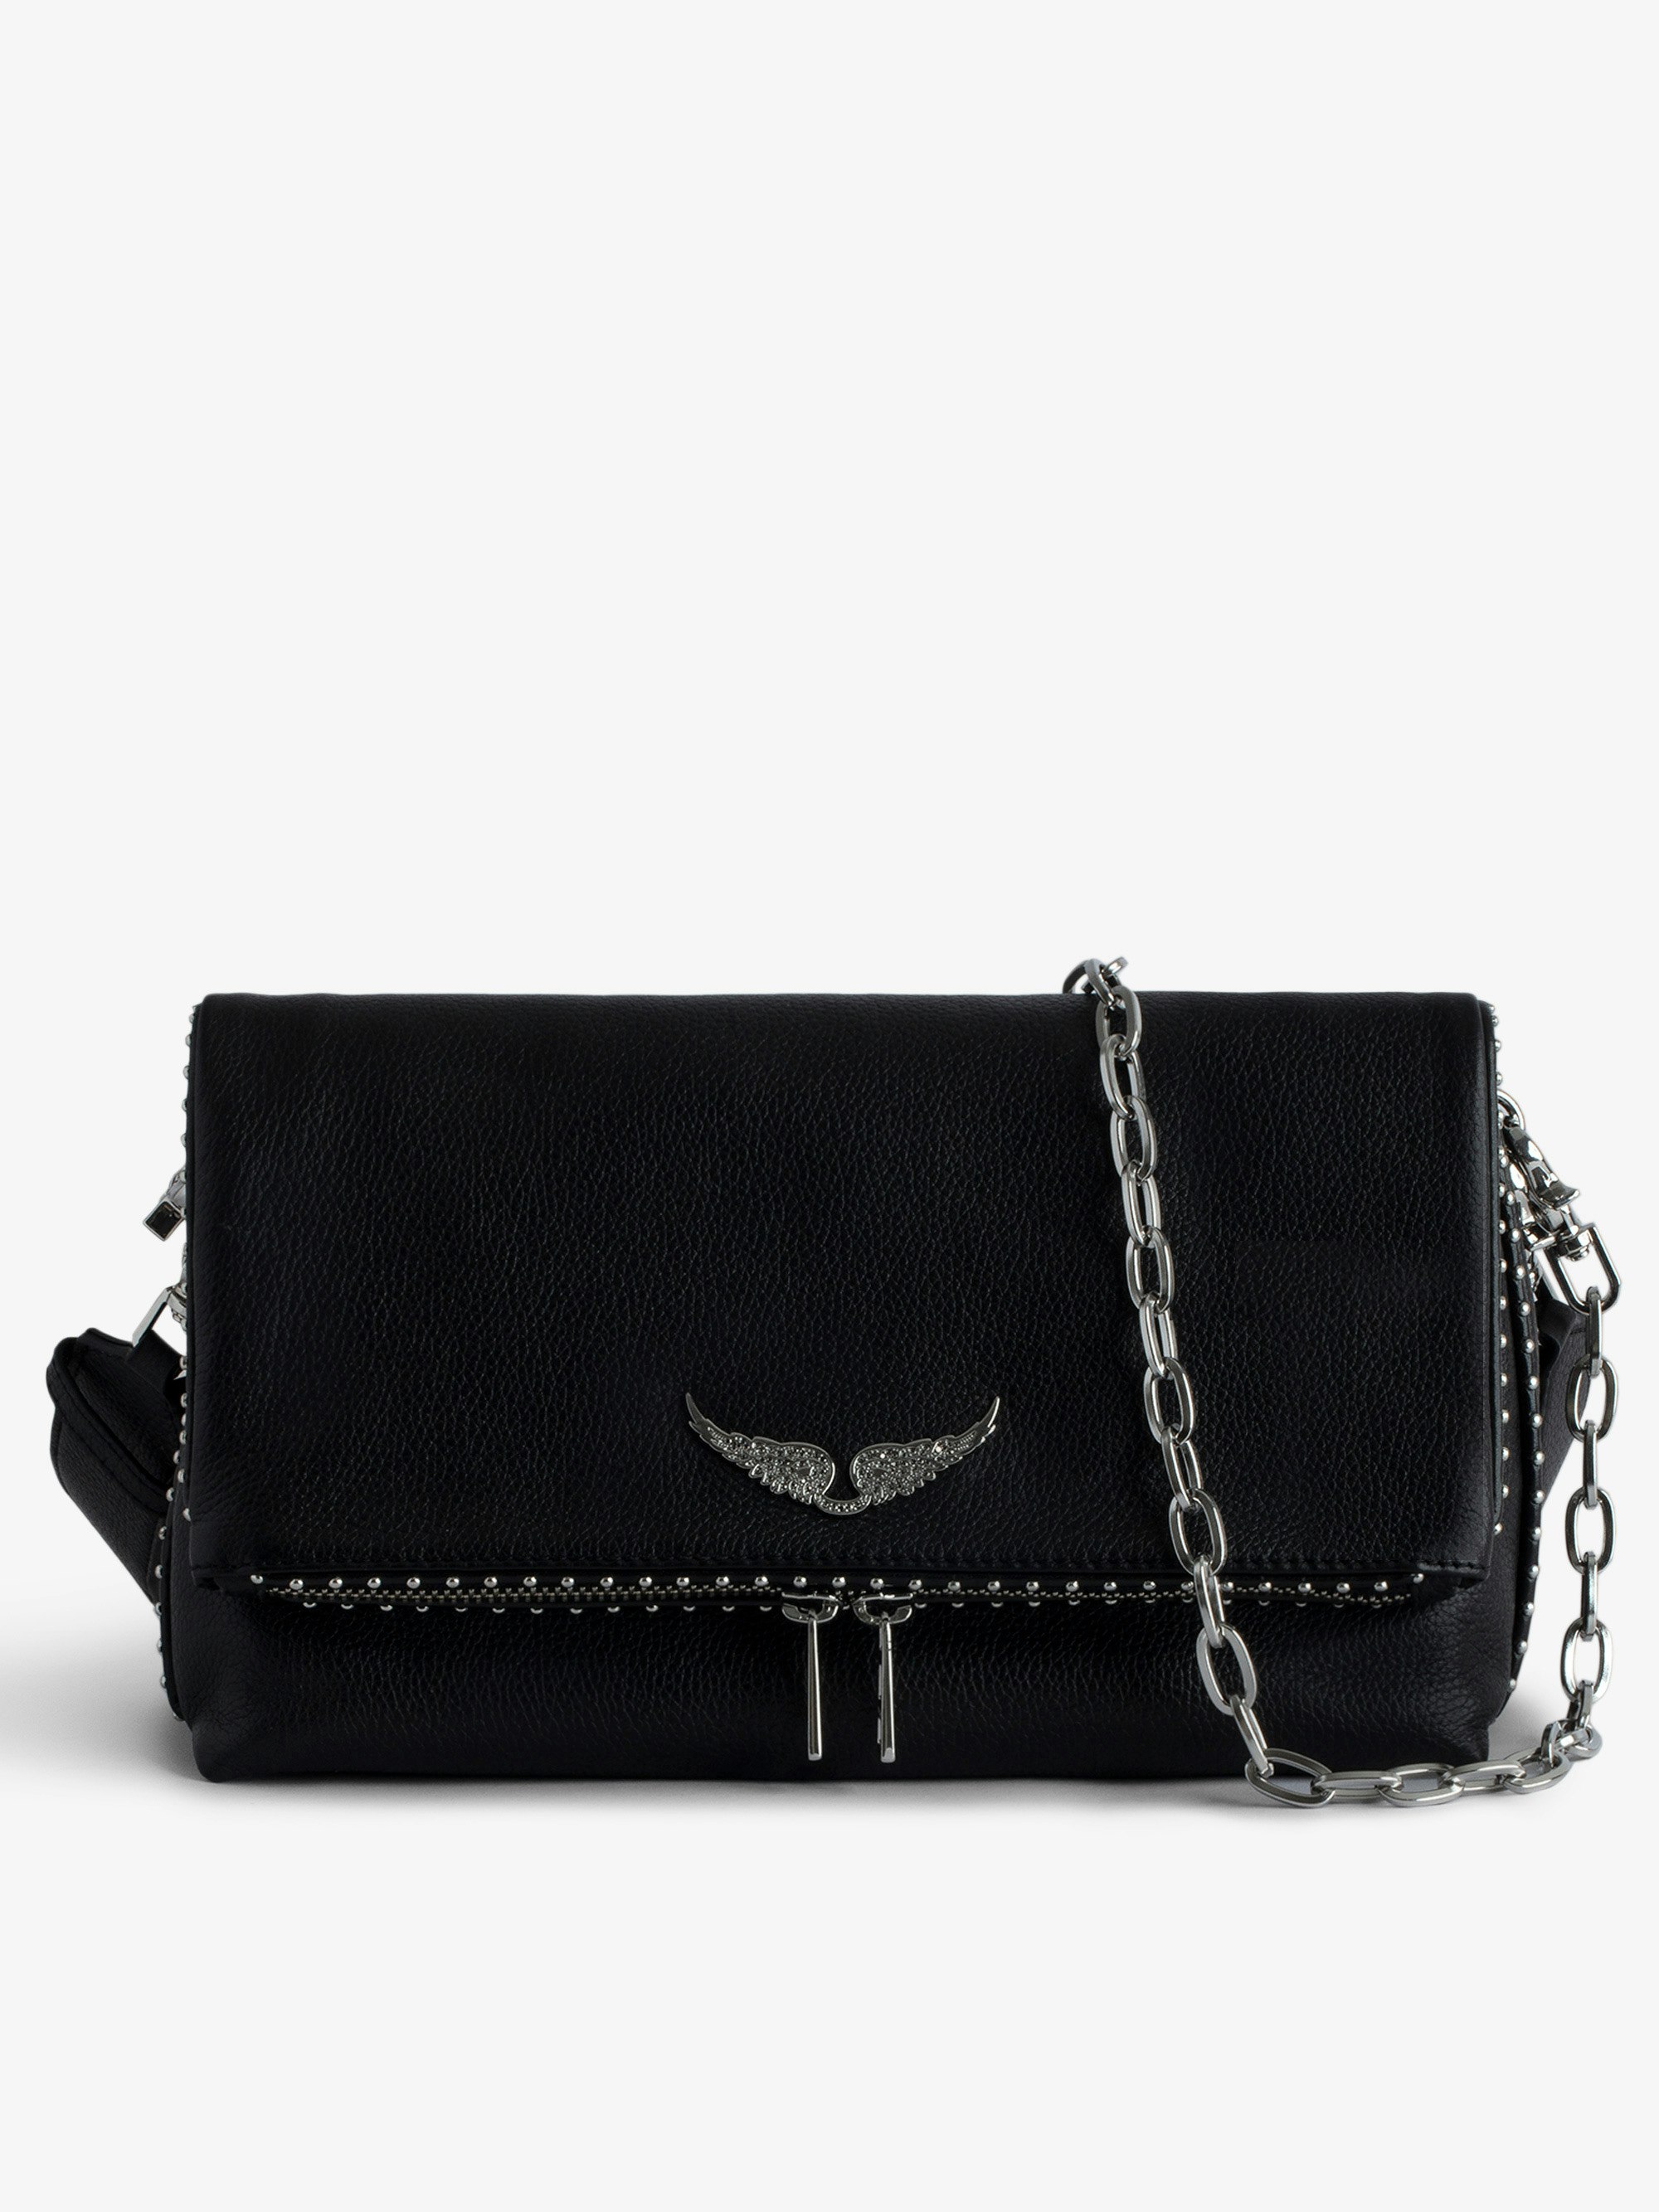 Tasche Rocky Studs - Ikonische Damen-Handtasche Rocky aus schwarzem, genarbtem Leder mit silberfarbenen Nieten.